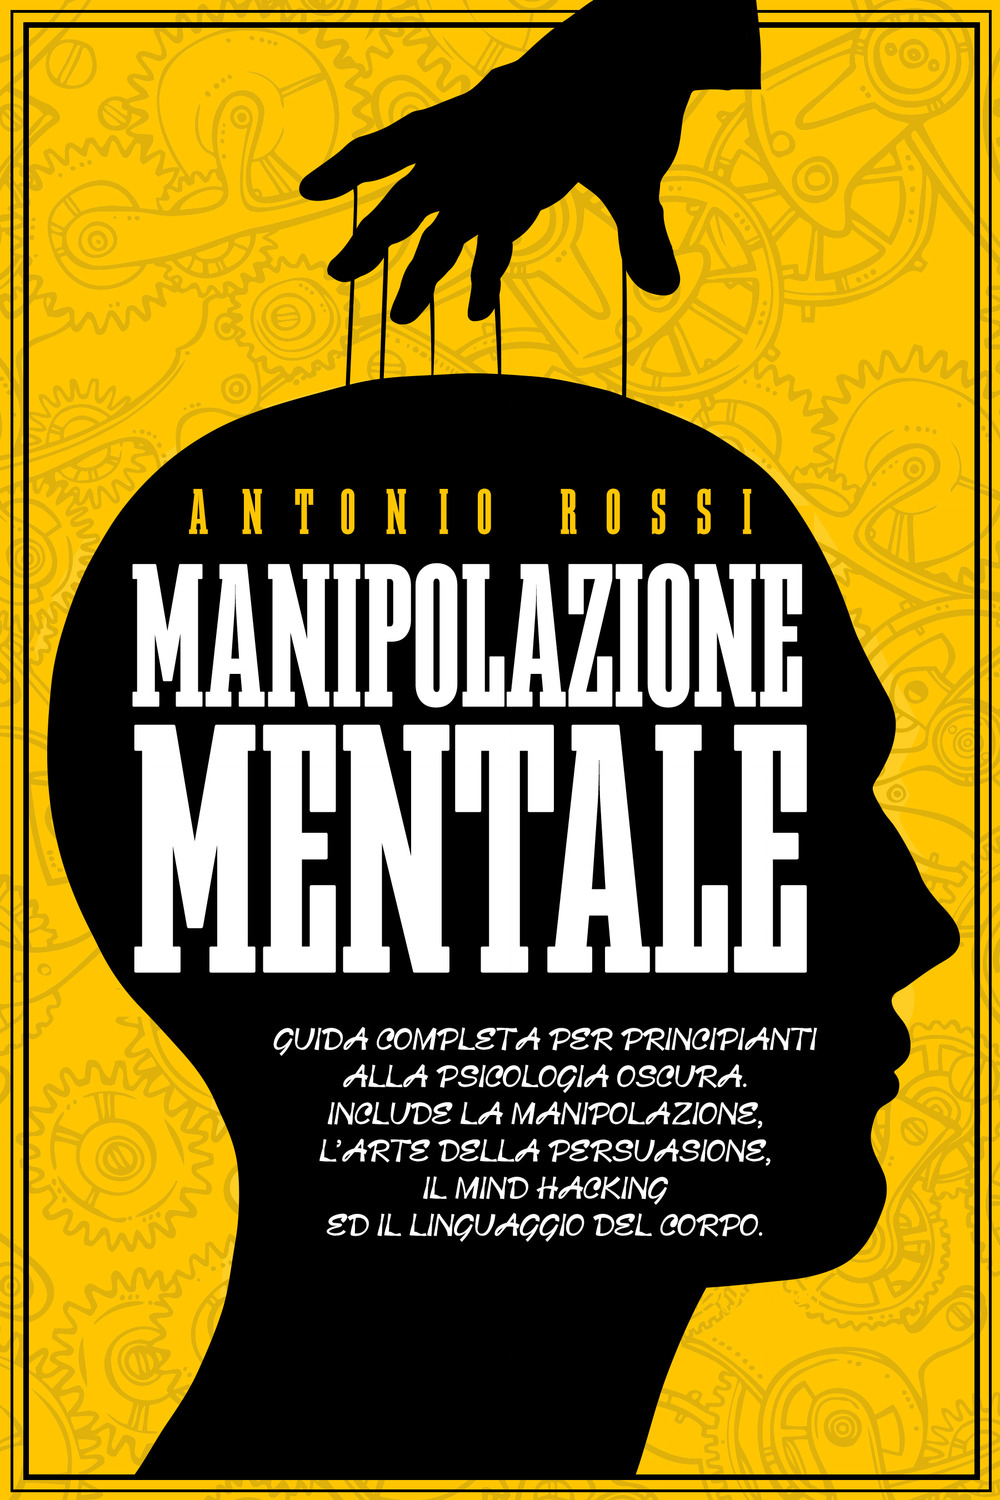 Manipolazione mentale. Guida completa per principianti alla psicologia oscura. Include la manipolazione, l'arte della persuasione, il Mind Hacking ed il linguaggio del corpo